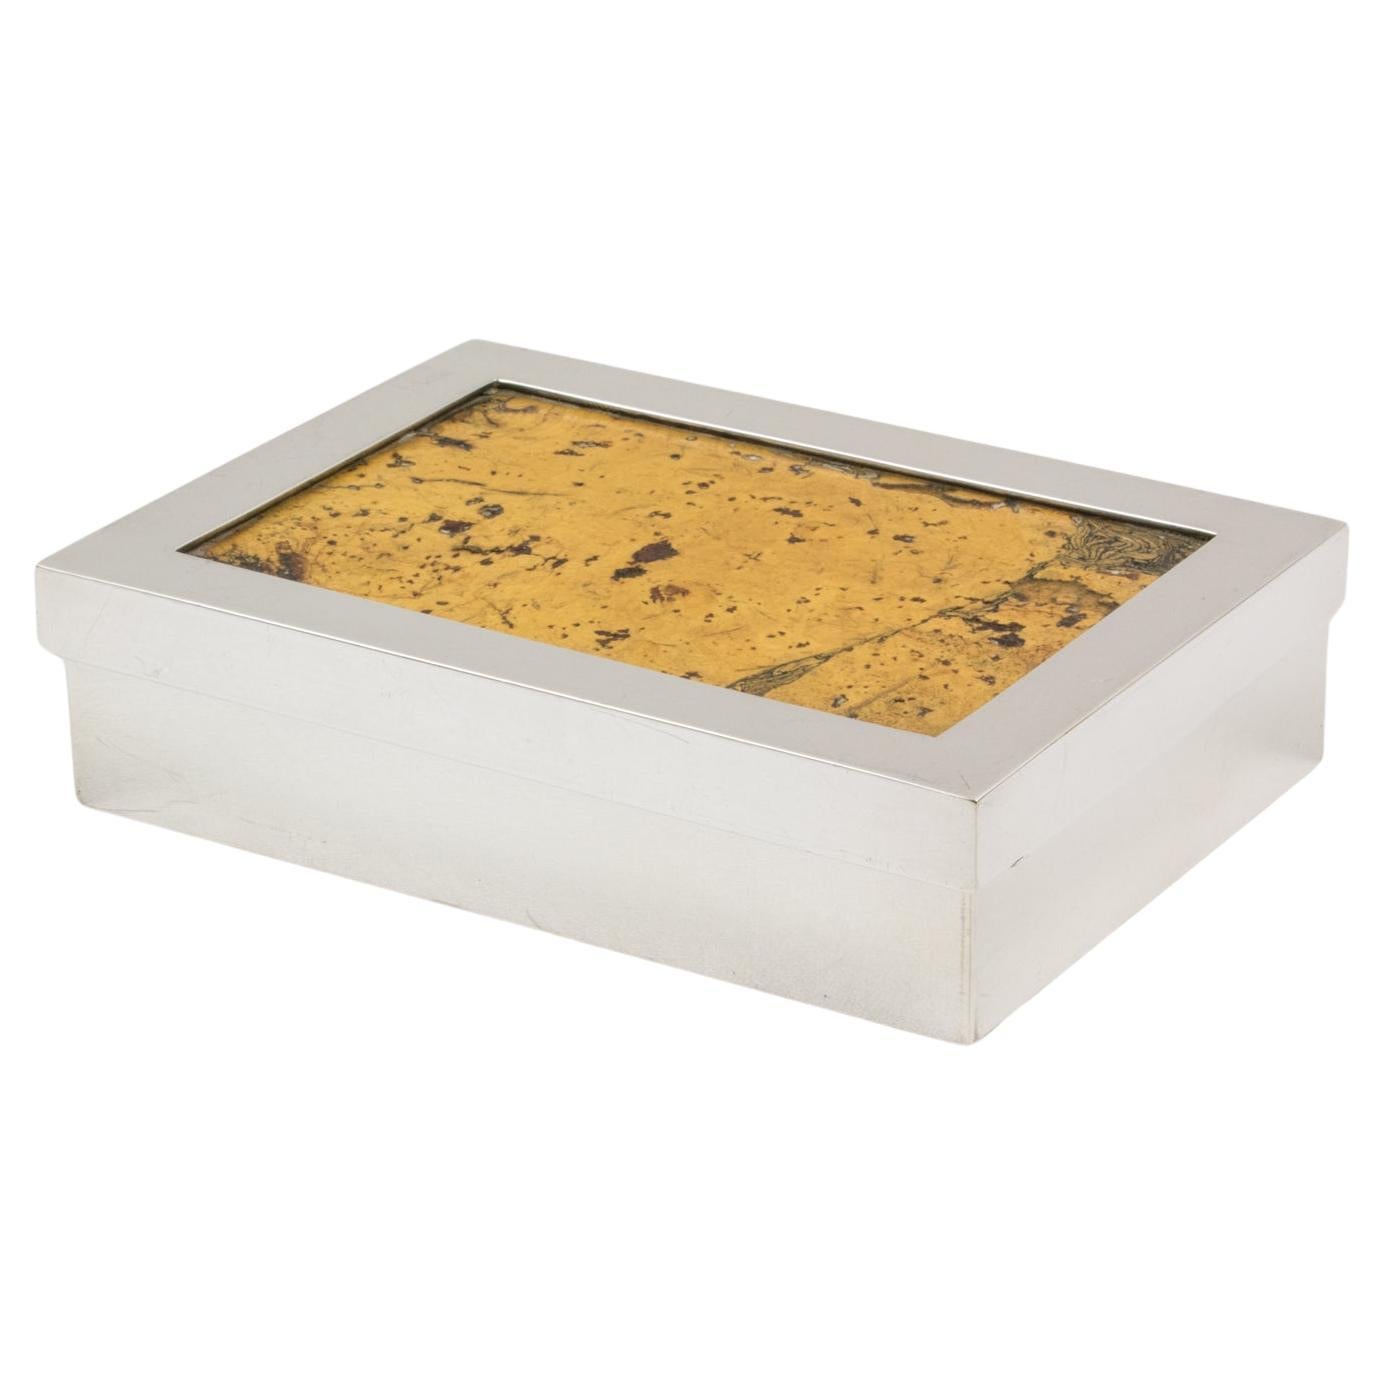 Debladis Paris Art Deco Silver Plate and Cork Decorative Box, 1940s